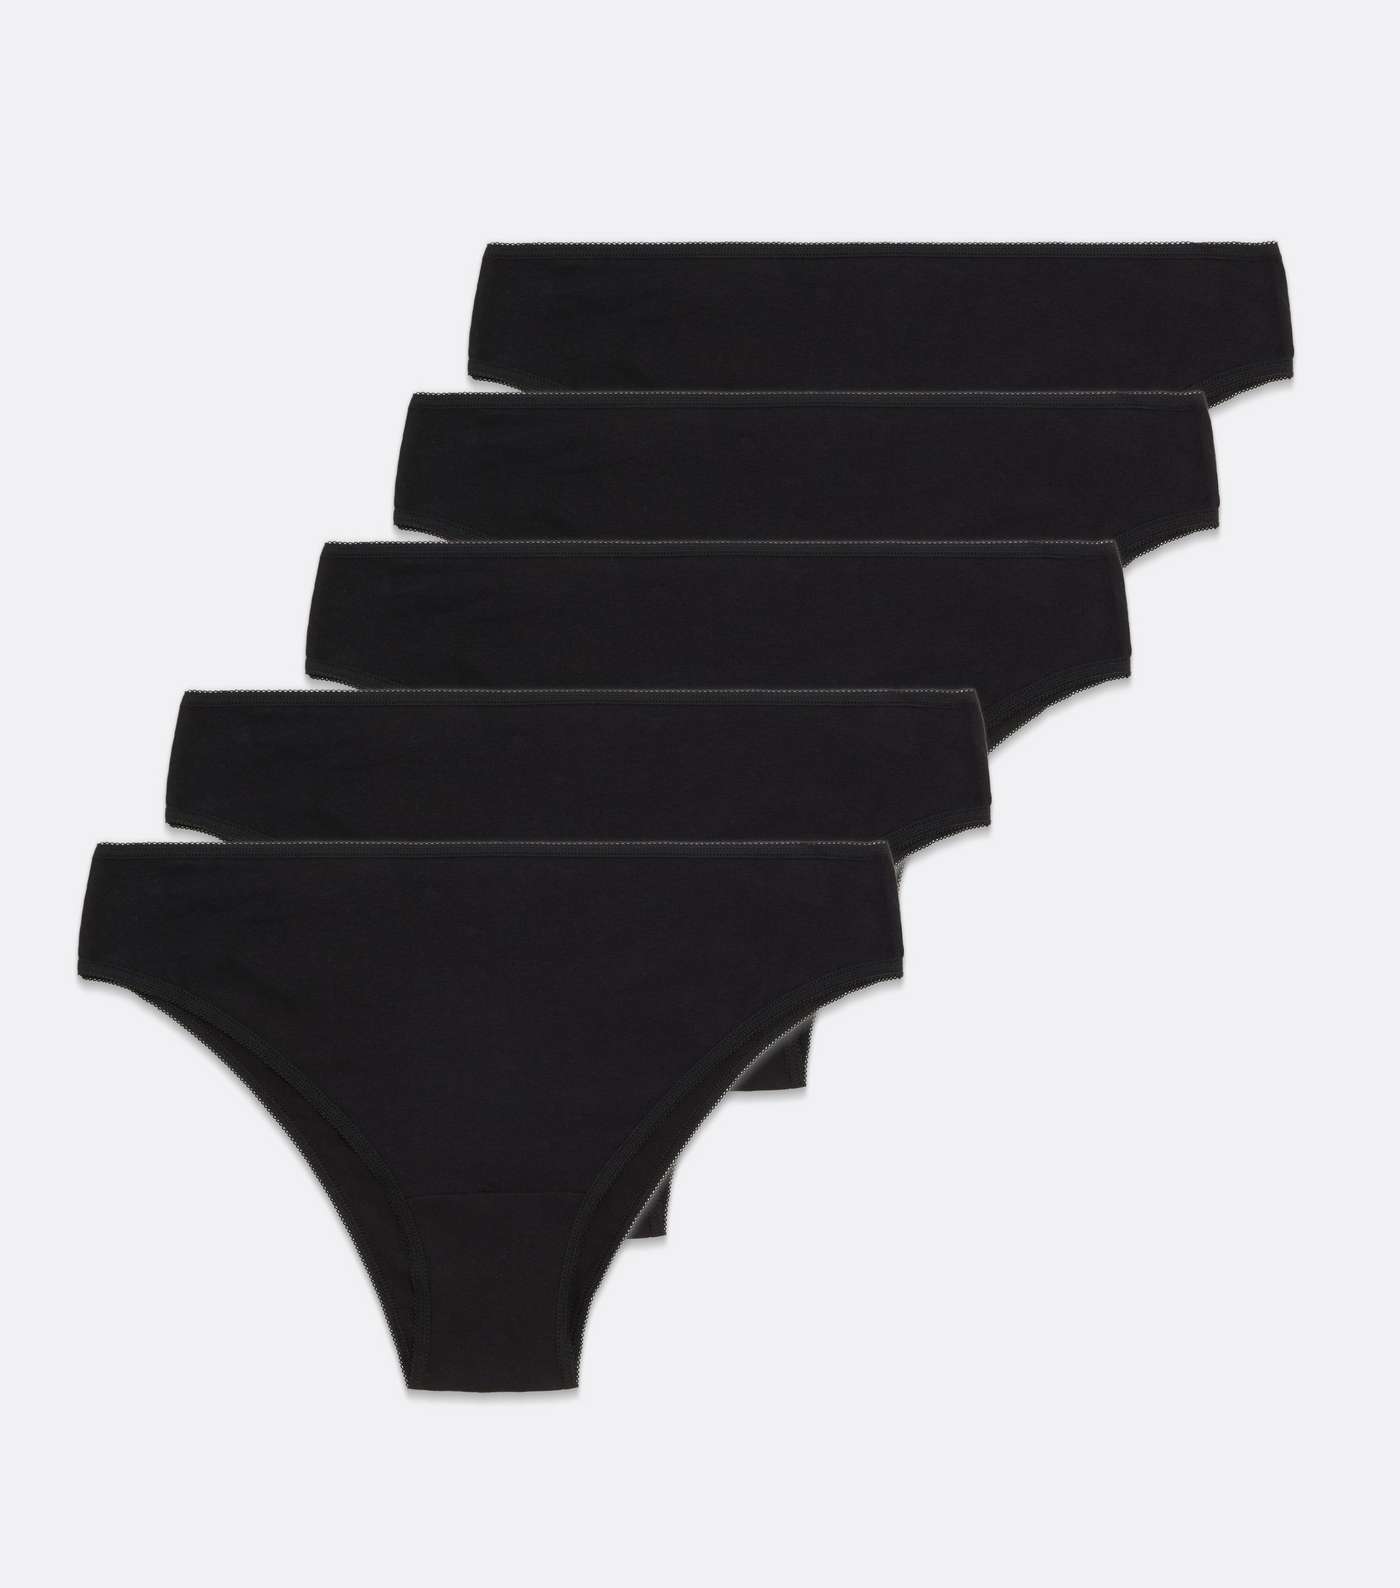 Curves 5 Pack Black Cotton Blend Brazilian Briefs Image 5